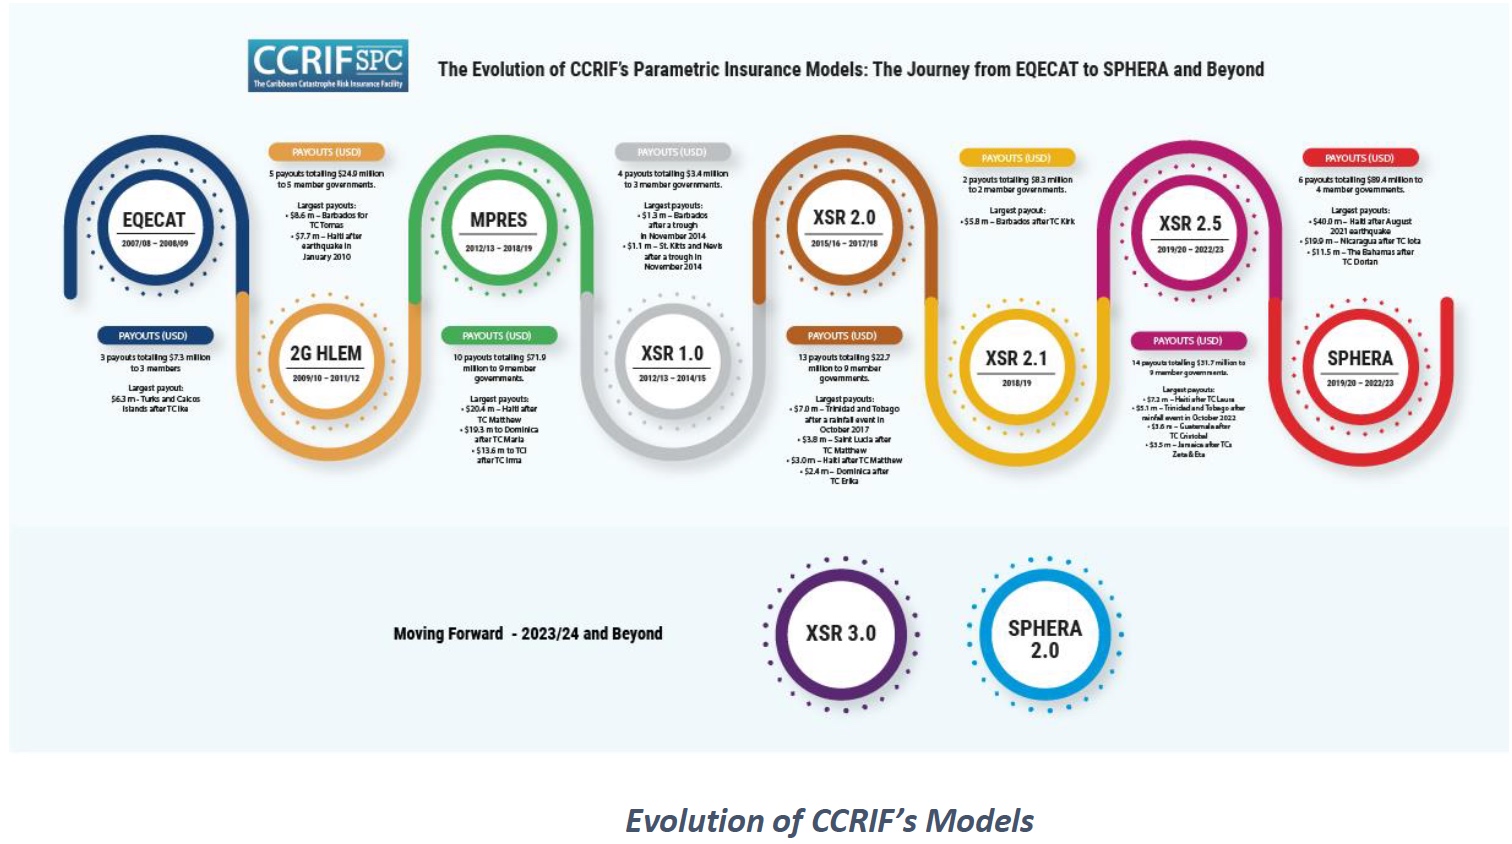 Evolution of CCRIF’s Models